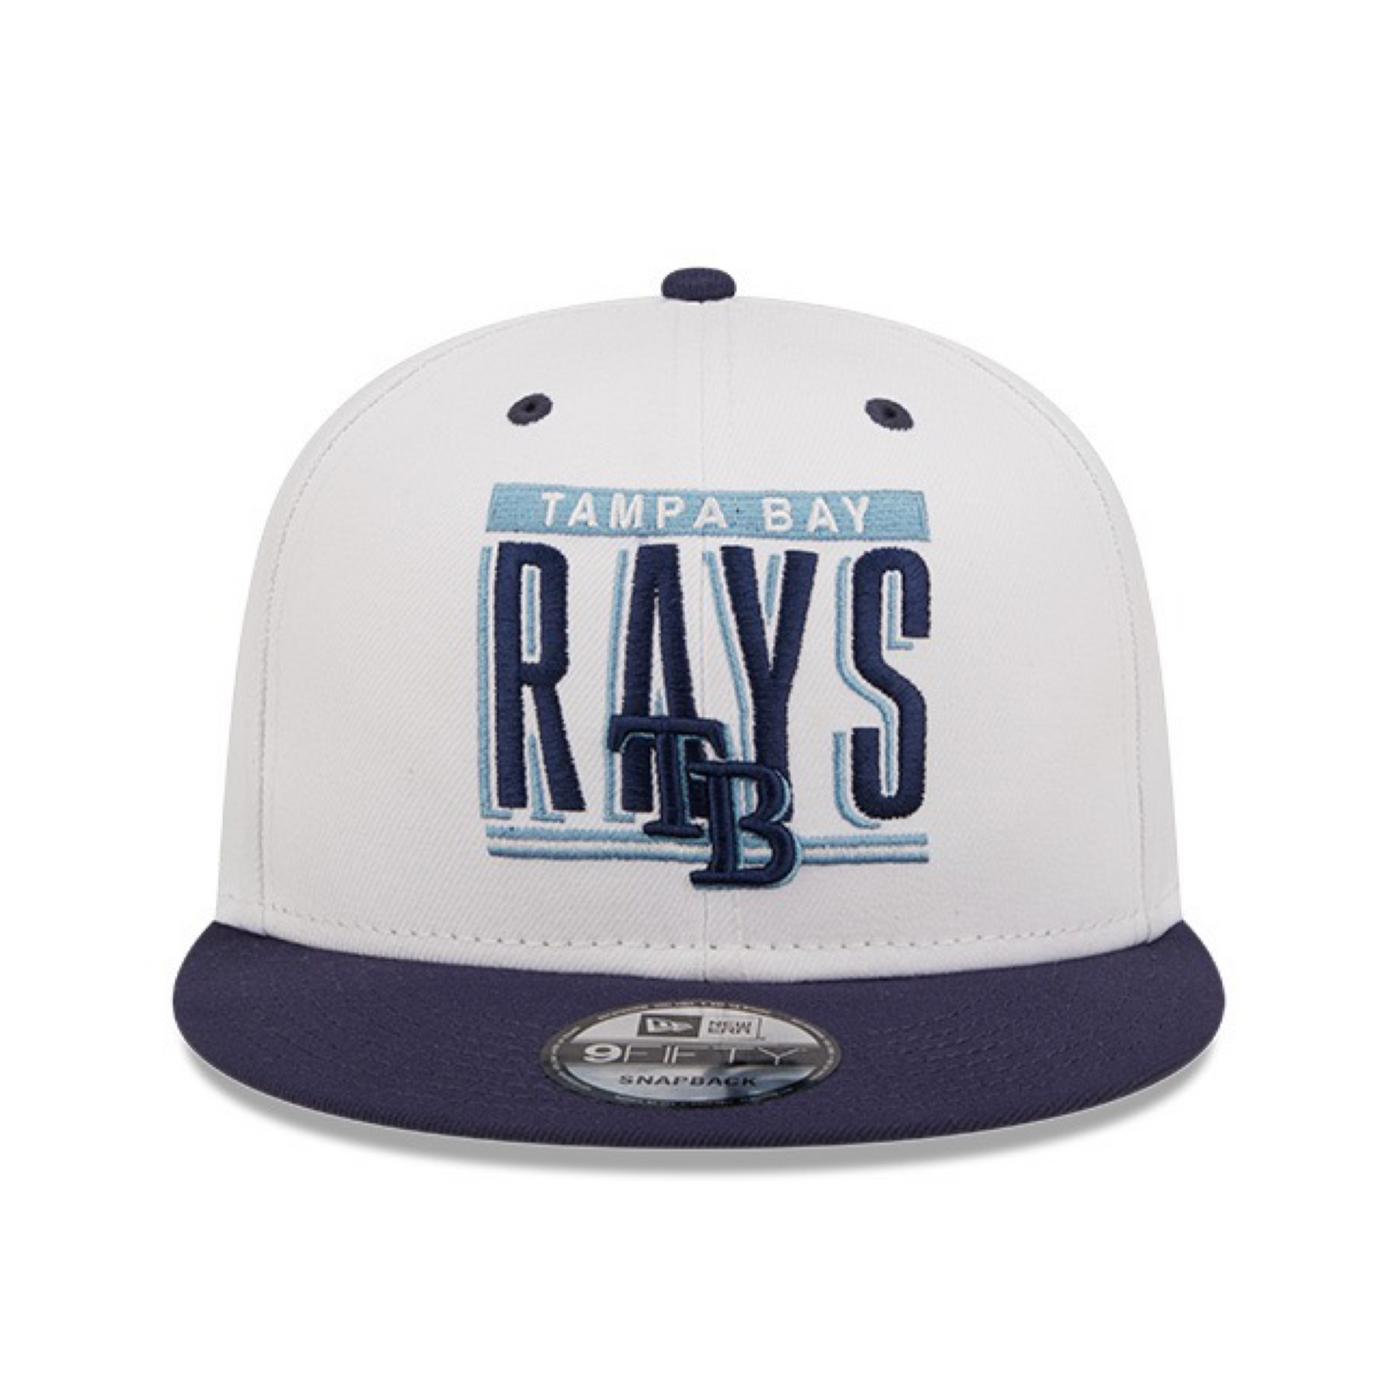 Men's New Era Gray/Navy Tampa Bay Rays Band 9FIFTY Snapback Hat